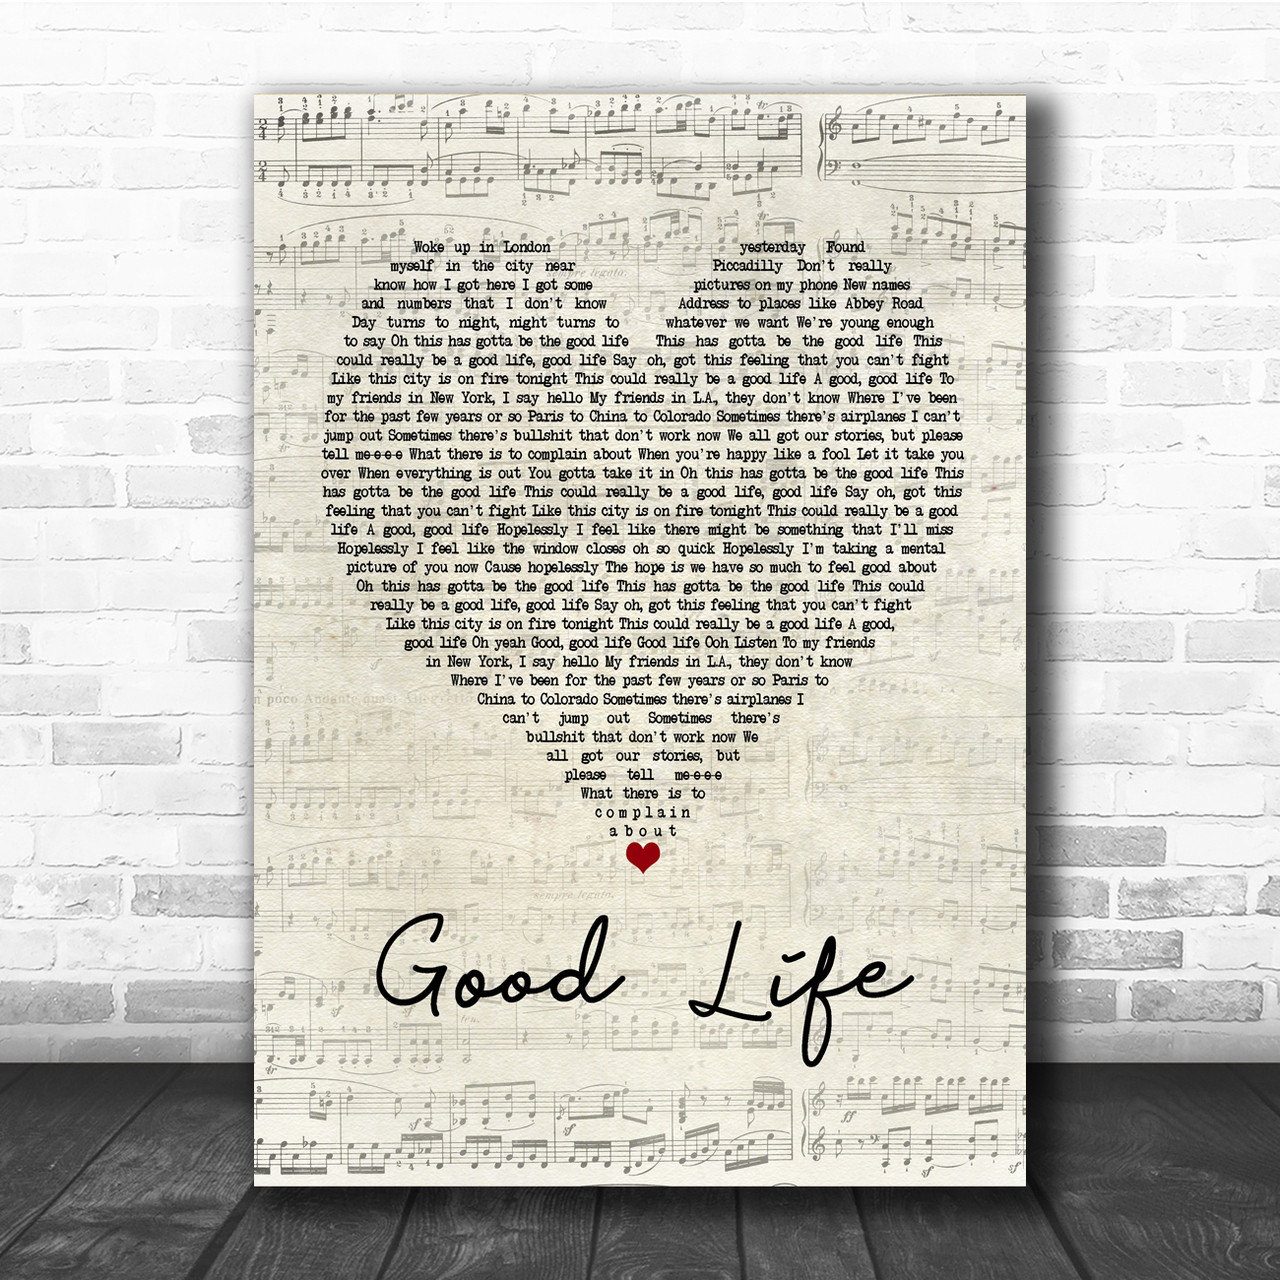 Good Life - OneRepublic 